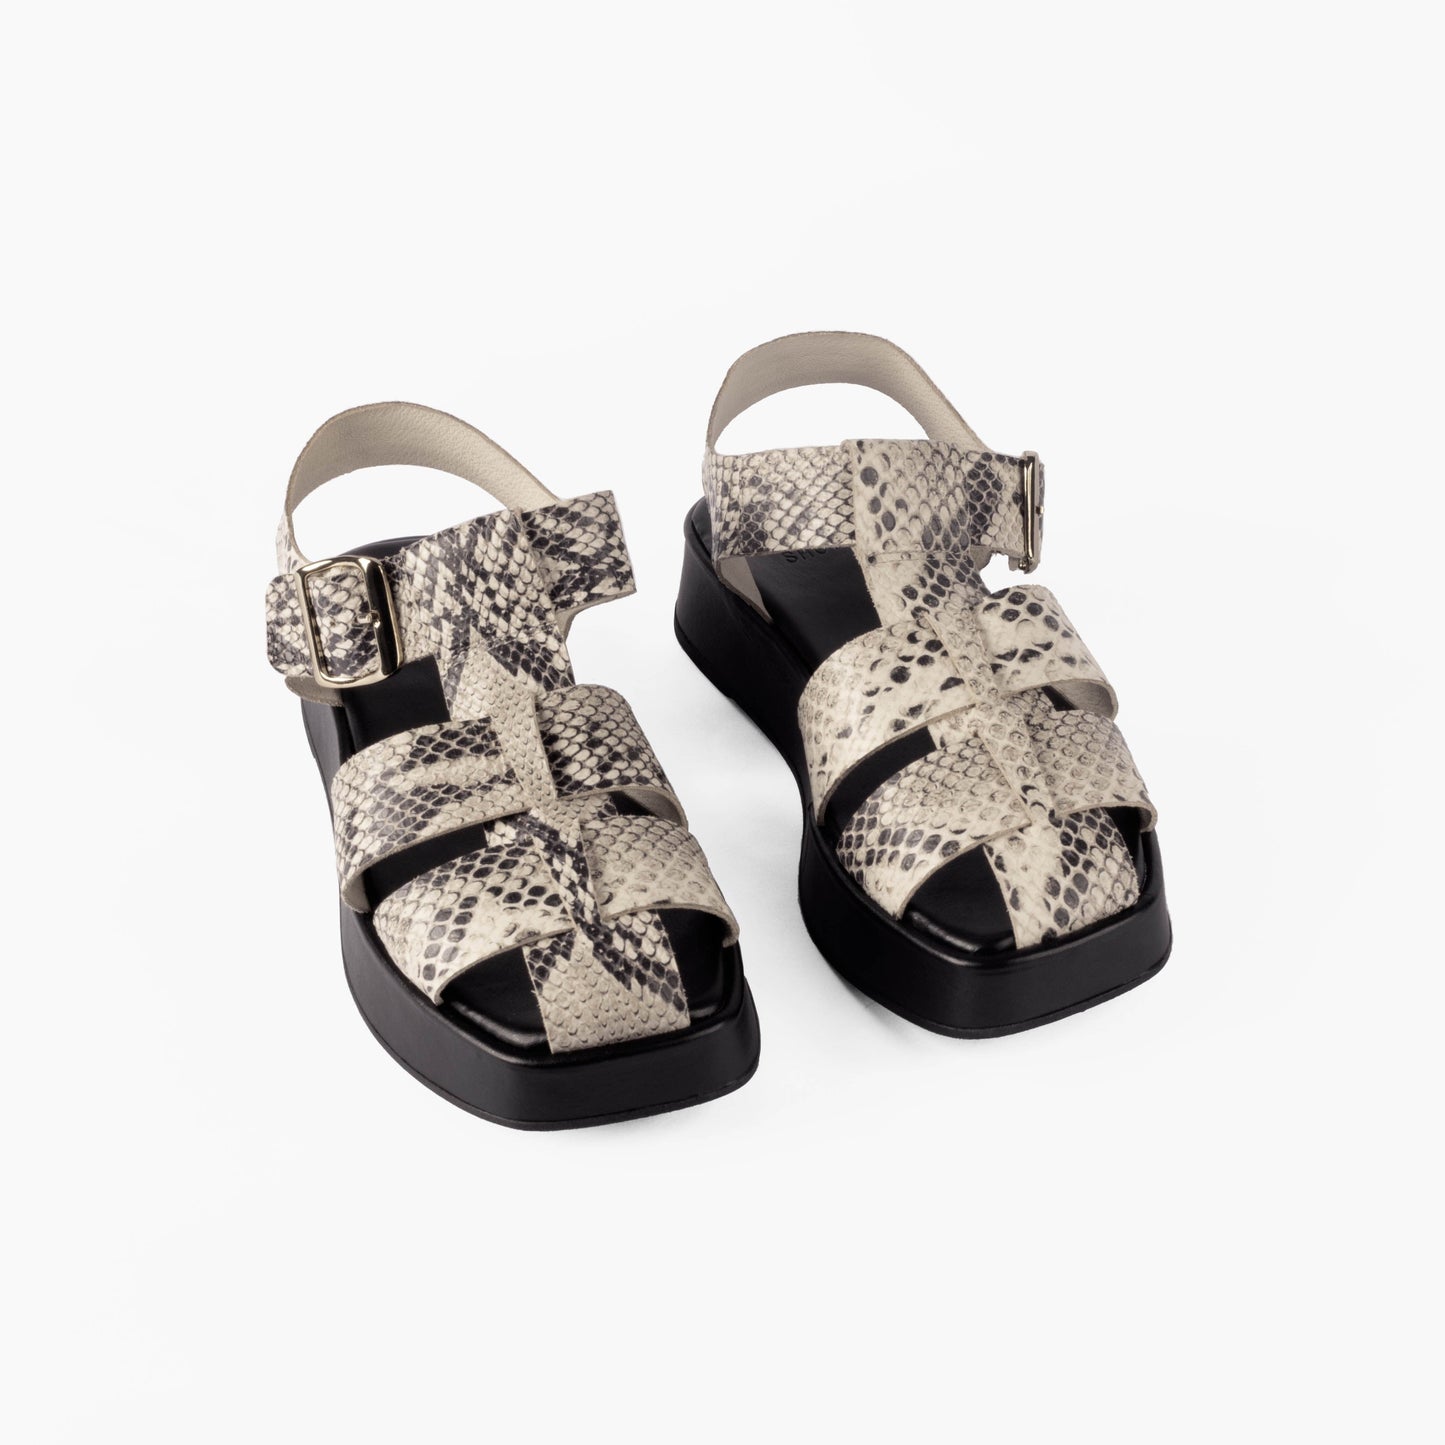 Vinci Shoes Ayla Snake Print Flatforms